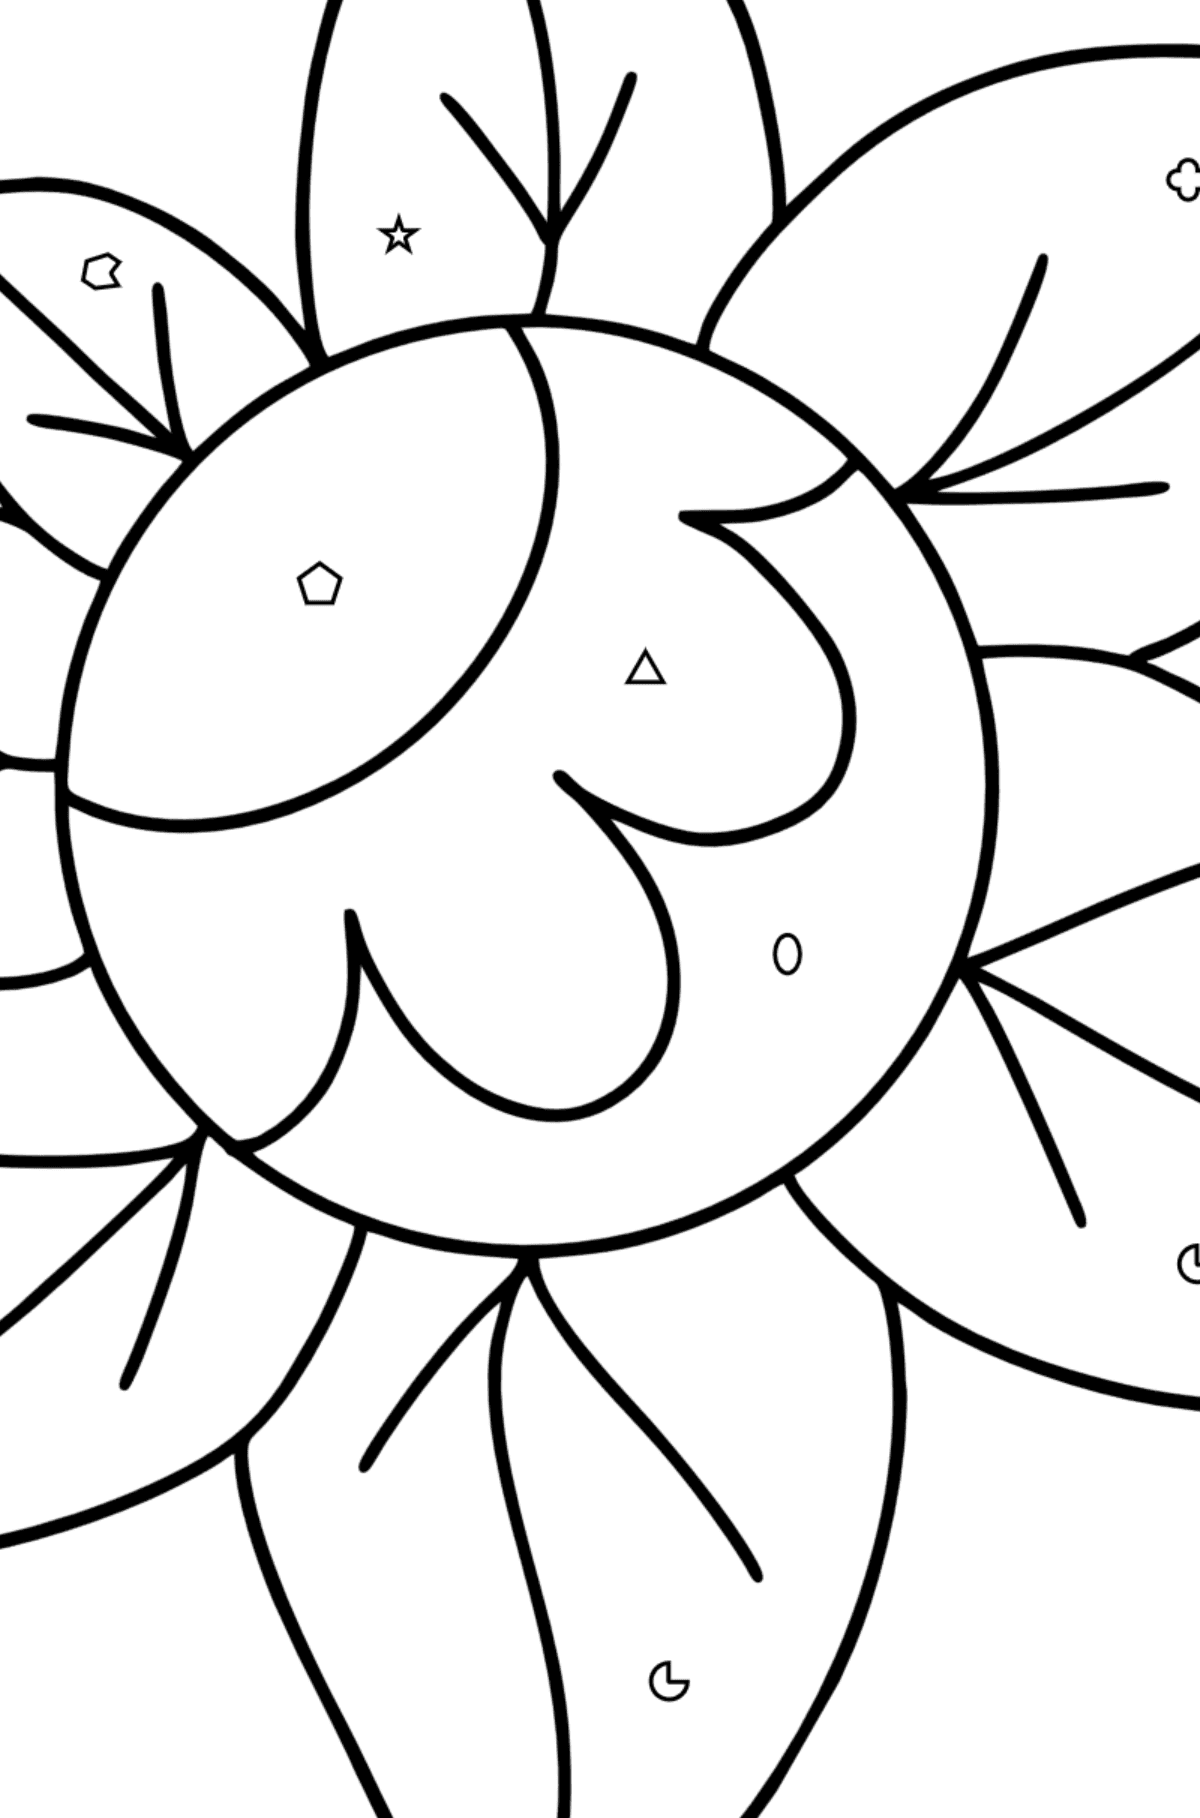 Ausmalbild Zentangle Art Blume - Ausmalen nach Geometrischen Formen für Kinder